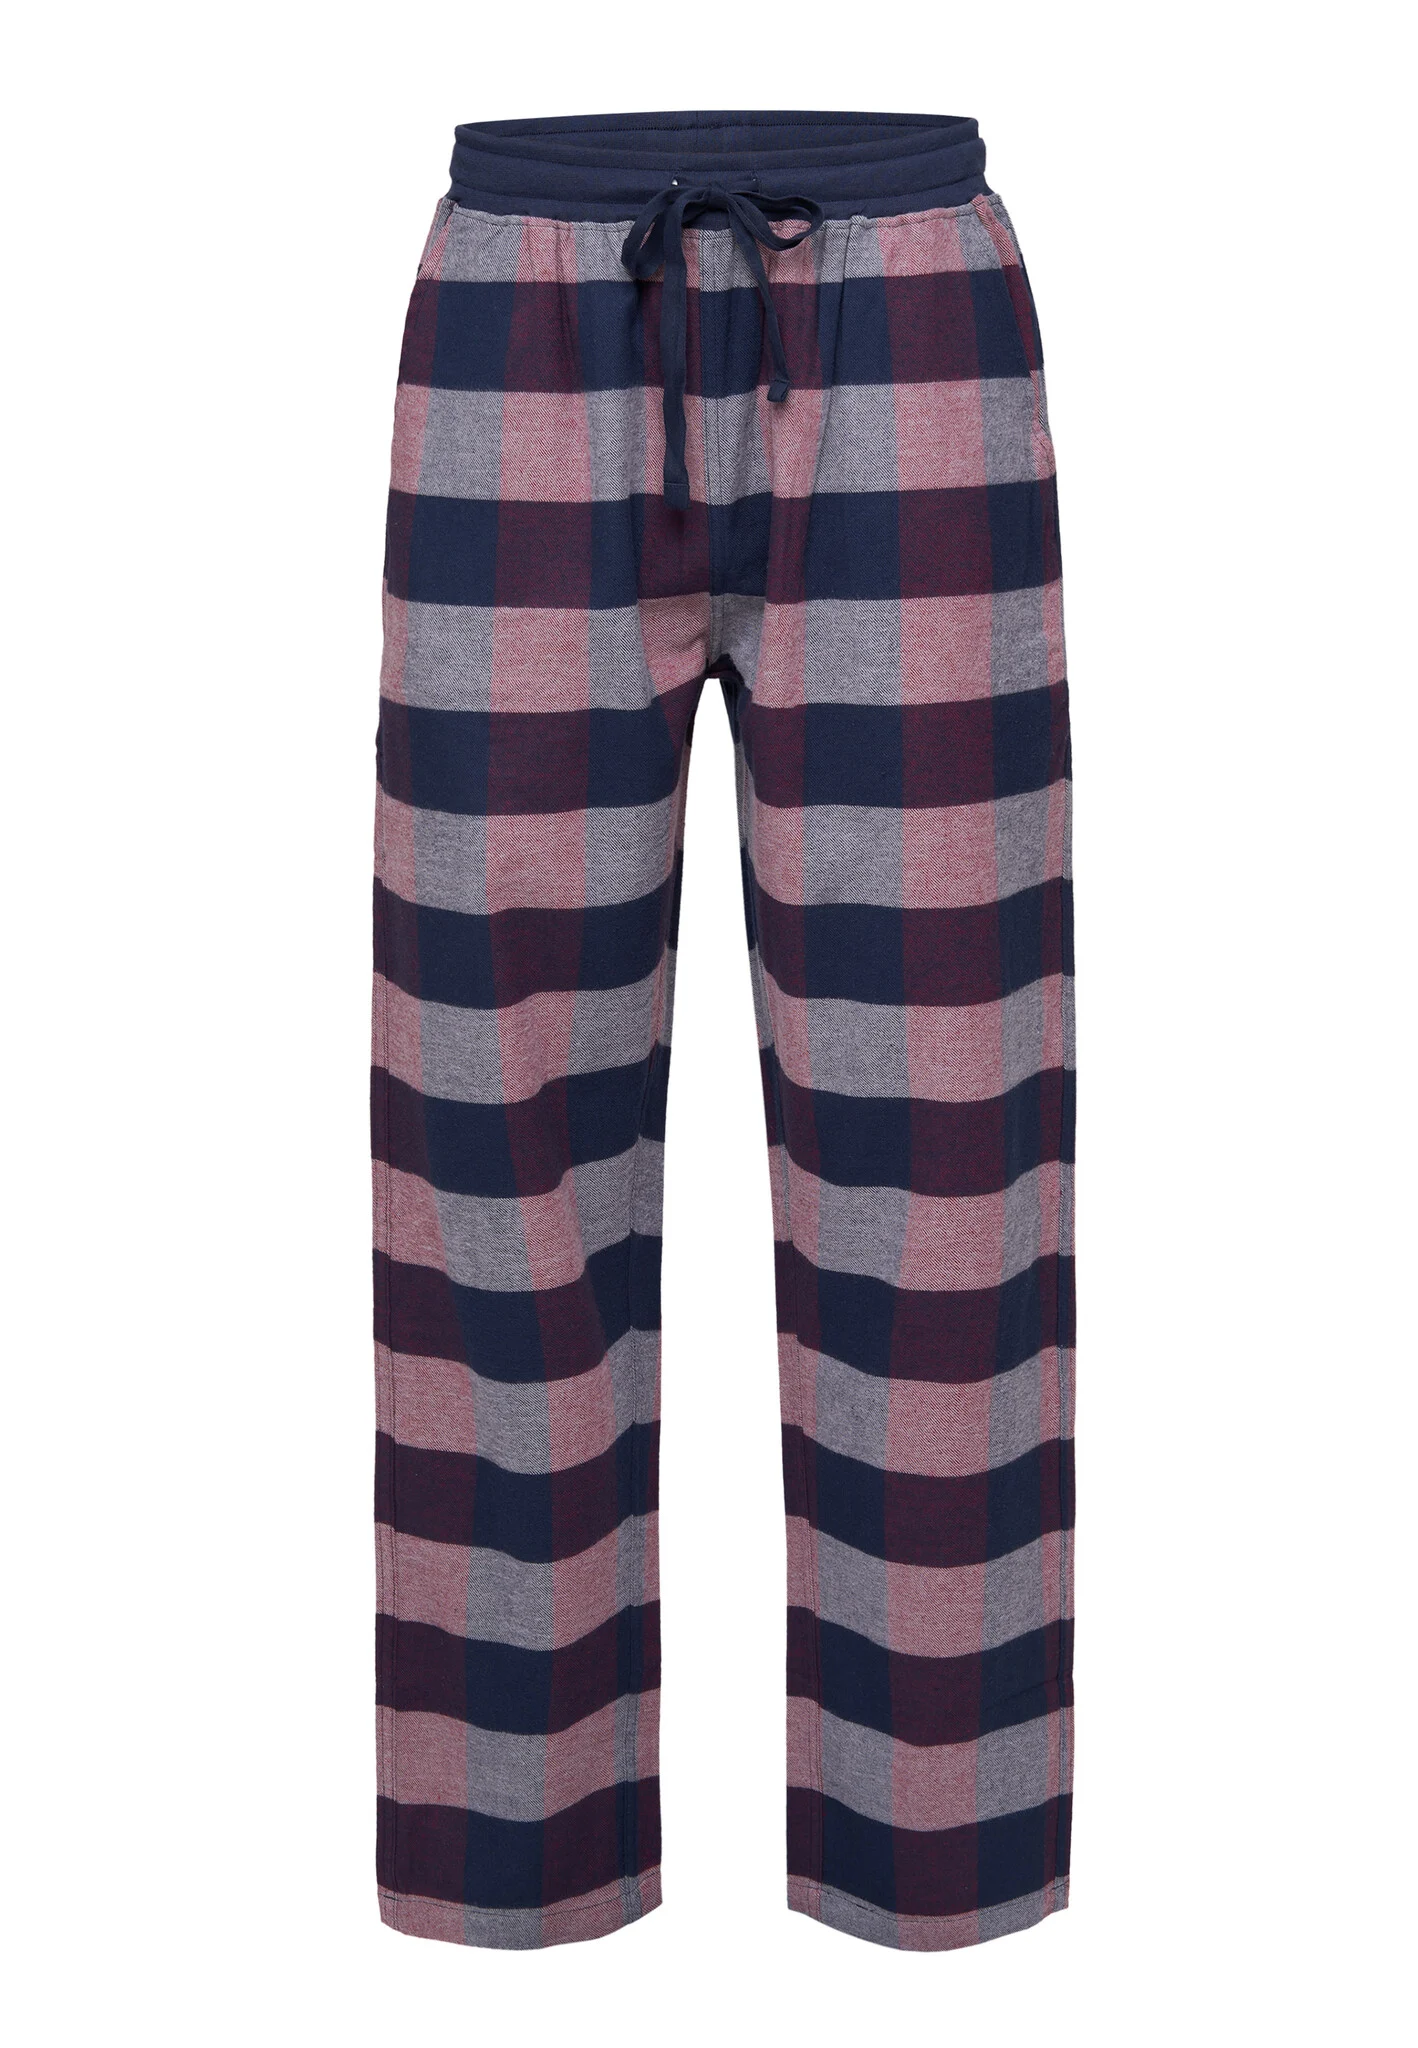 Afbeelding van Phil & Co Heren pyjamabroek lang geruit flanel blauw/rood